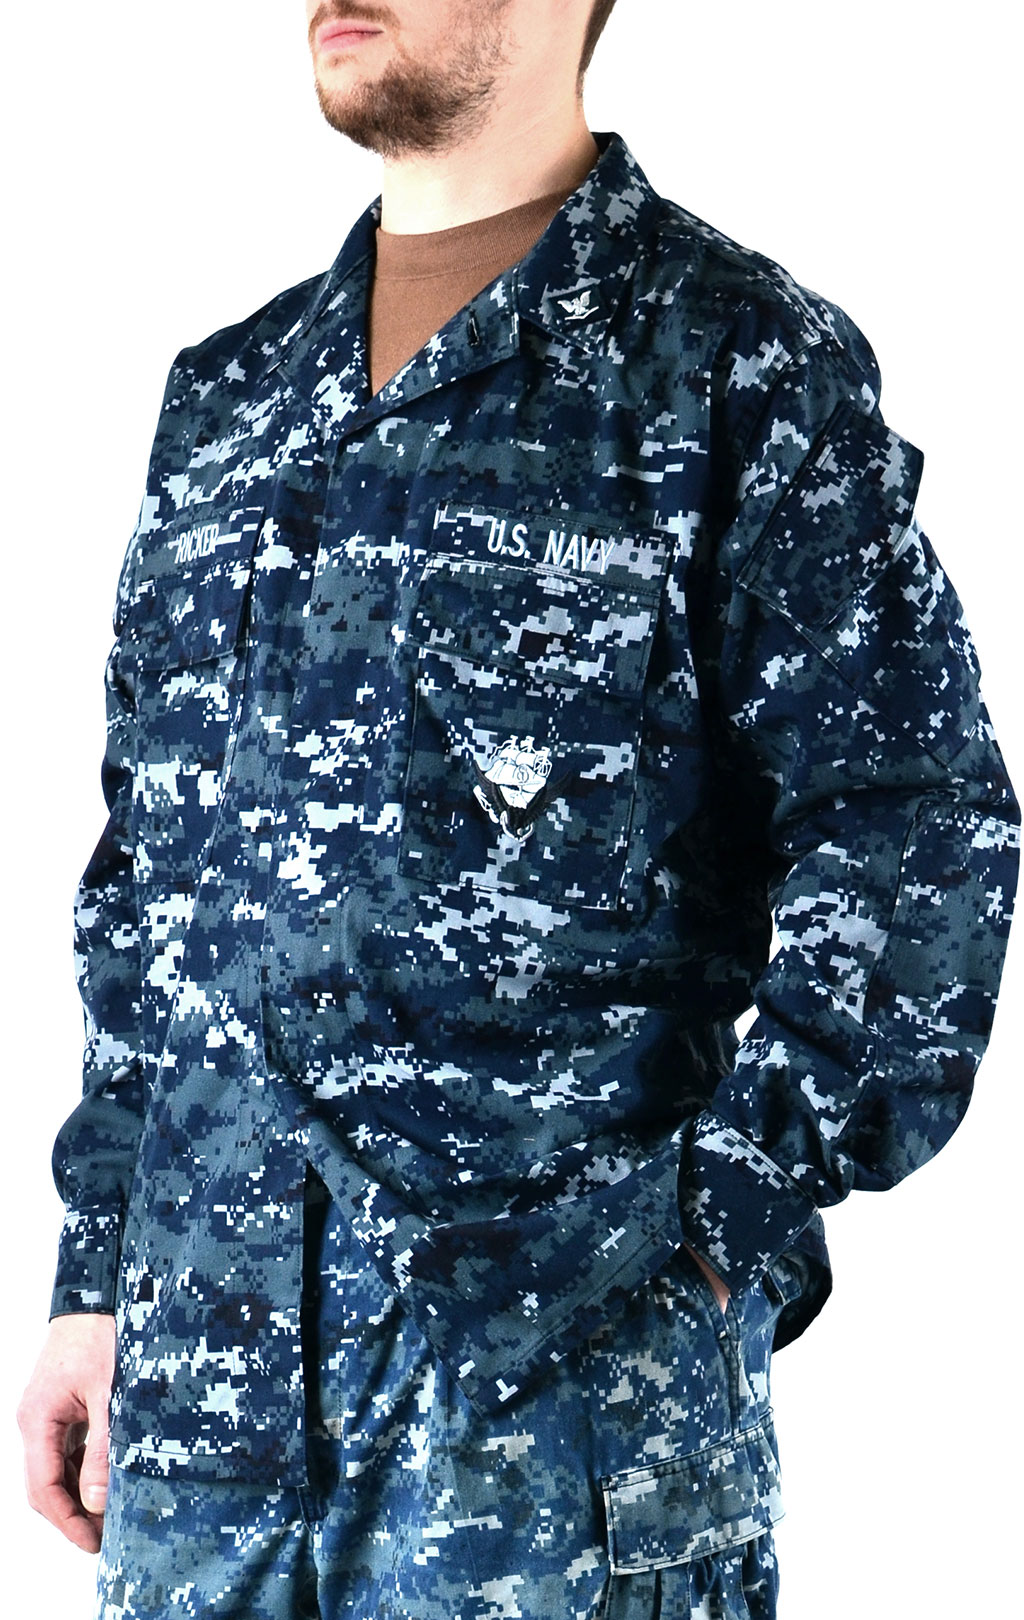 Китель полевой NWU digital navy США